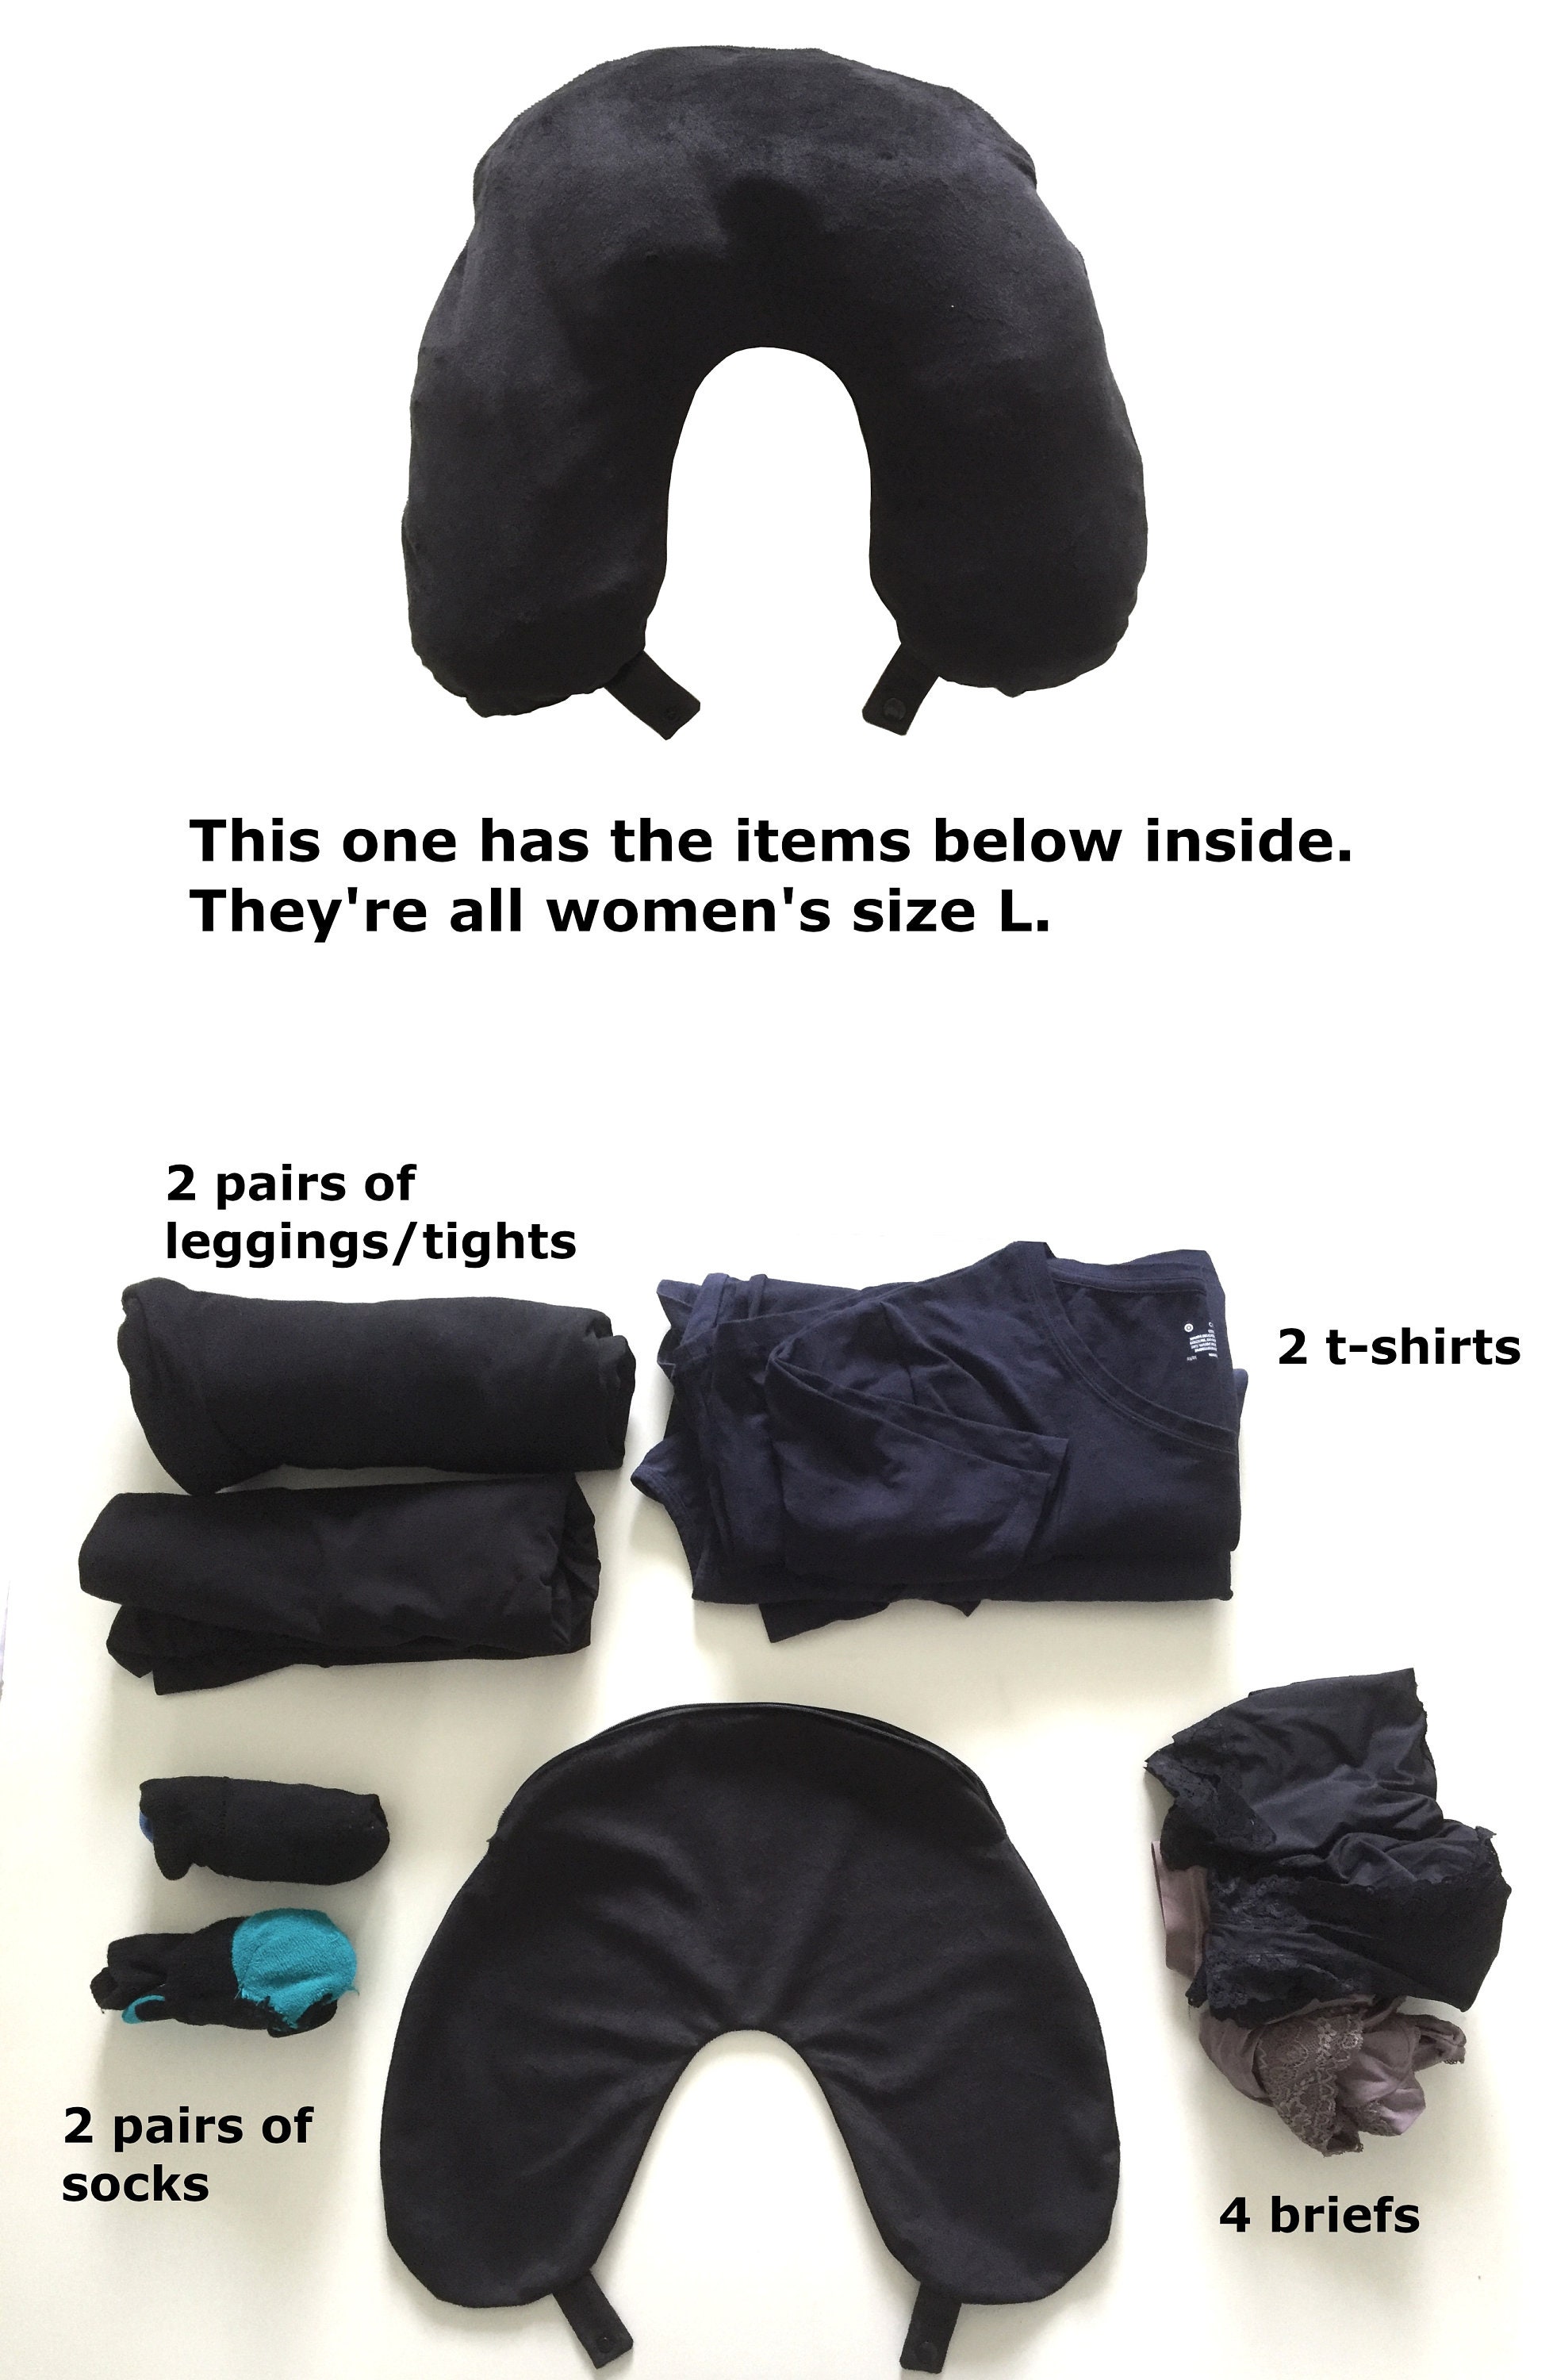  La almohada Nab (cuello y bolsa) se puede rellenar con ropa,  almacenamiento extra sin tarifas adicionales. Un equipaje de mano de viaje  gratis que se adapta a artículos de más de